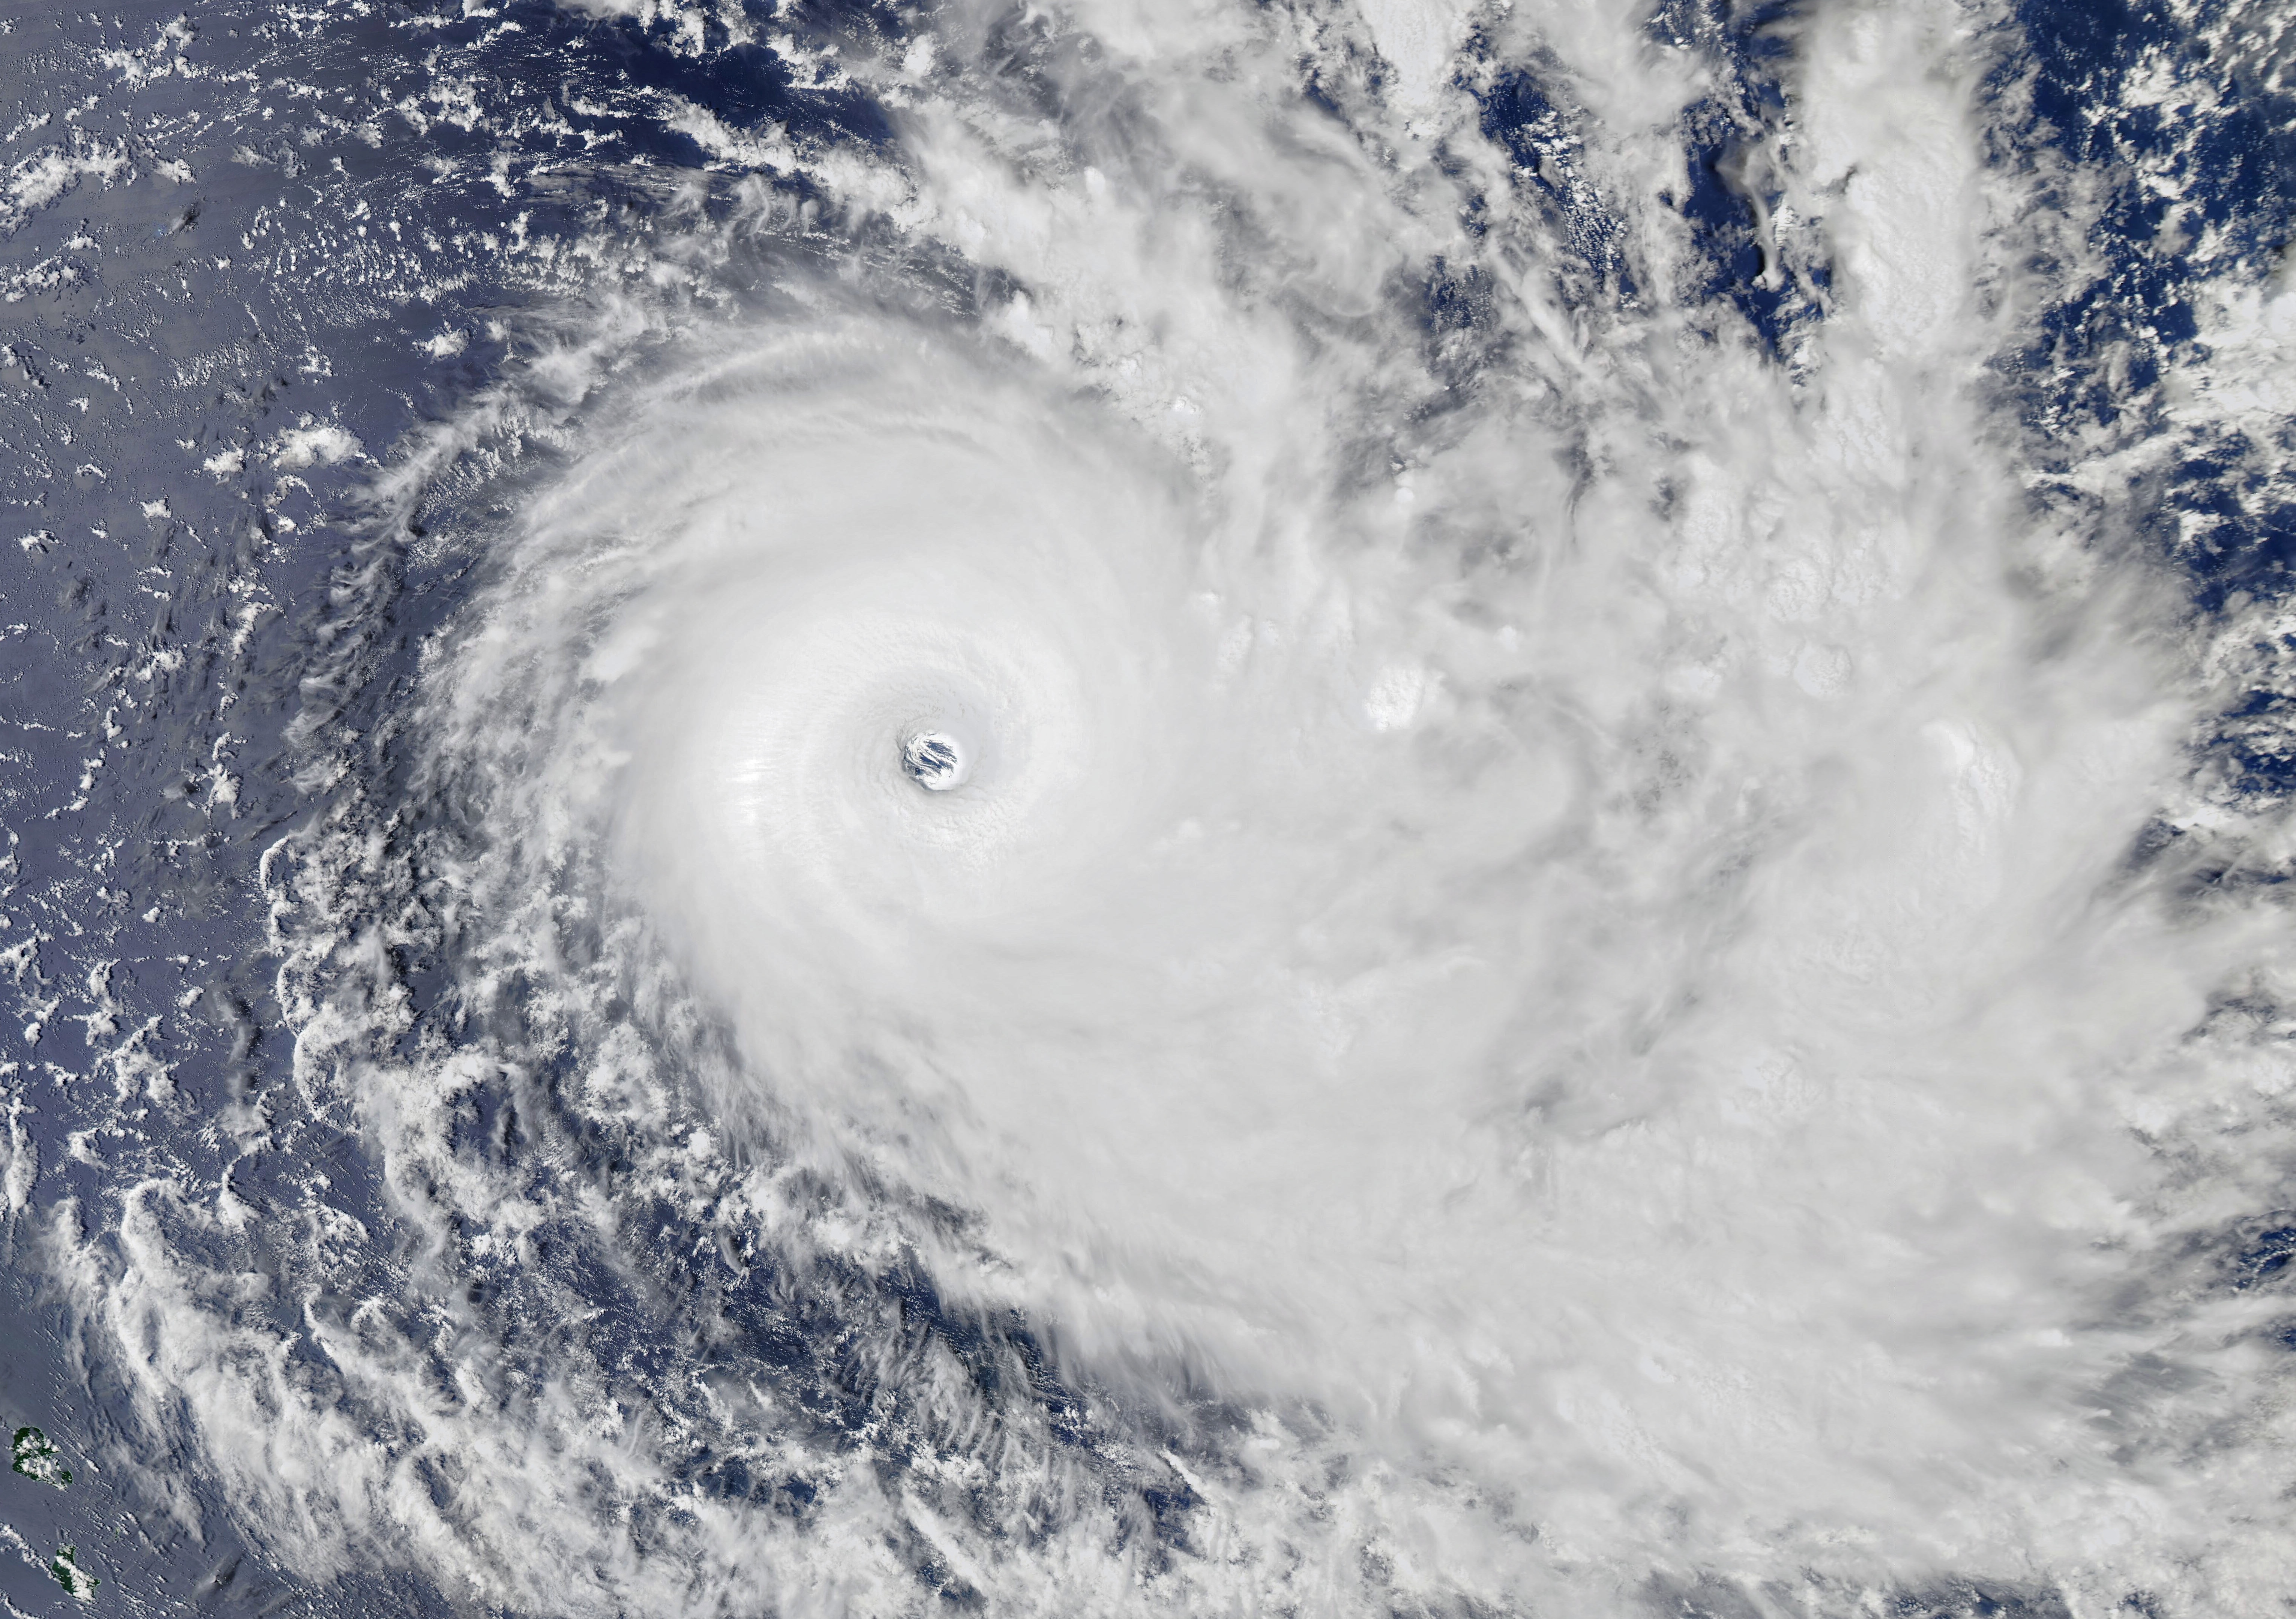 Le monstrueux cyclon Yasa, le 16 décembre 2020, photographié par le satellite Aqua de la Nasa. © Nasa